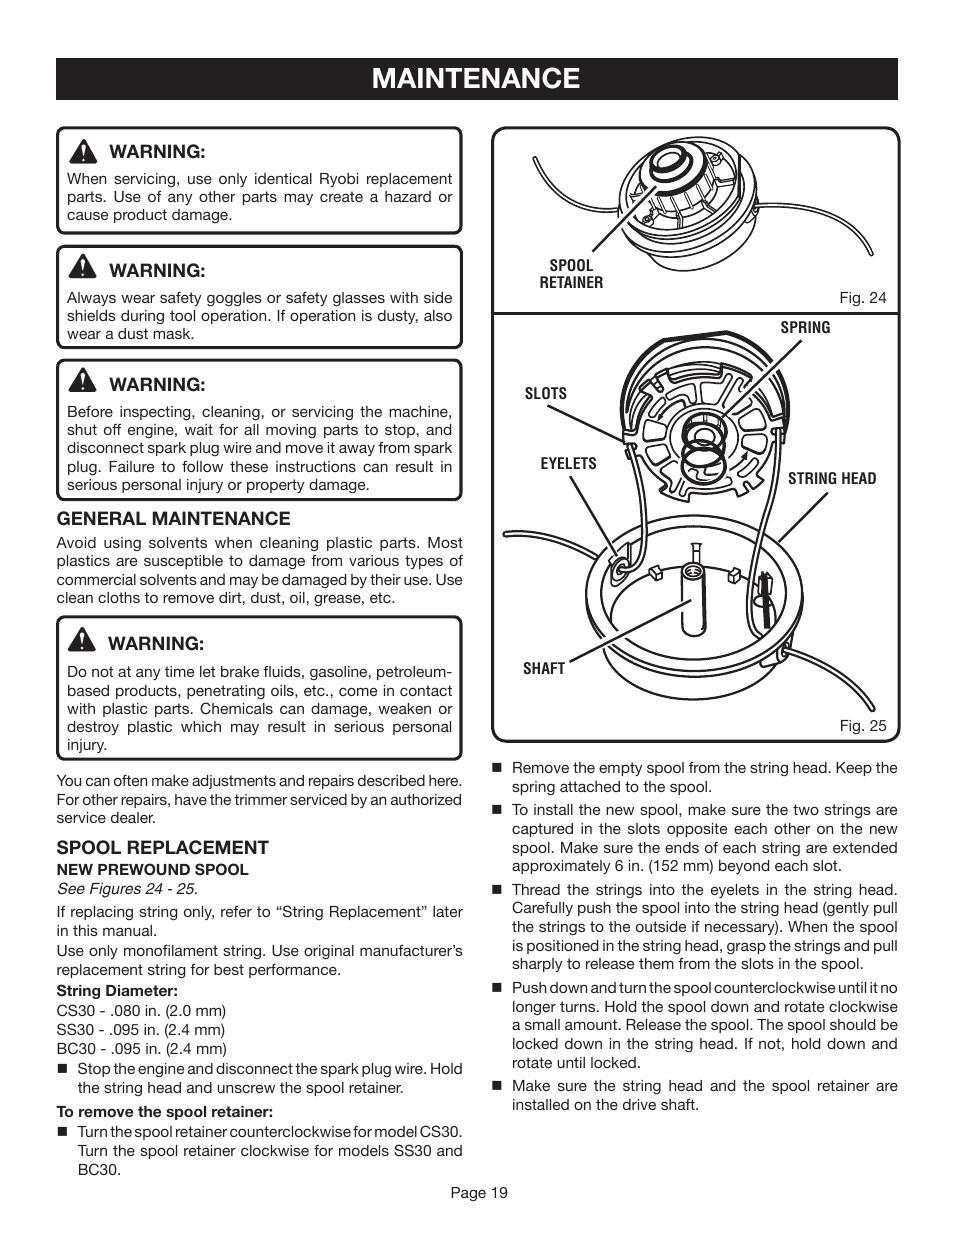 Maintenance | Ryobi CS30 RY30020A User Manual | Page 19 / 26 | Original mode